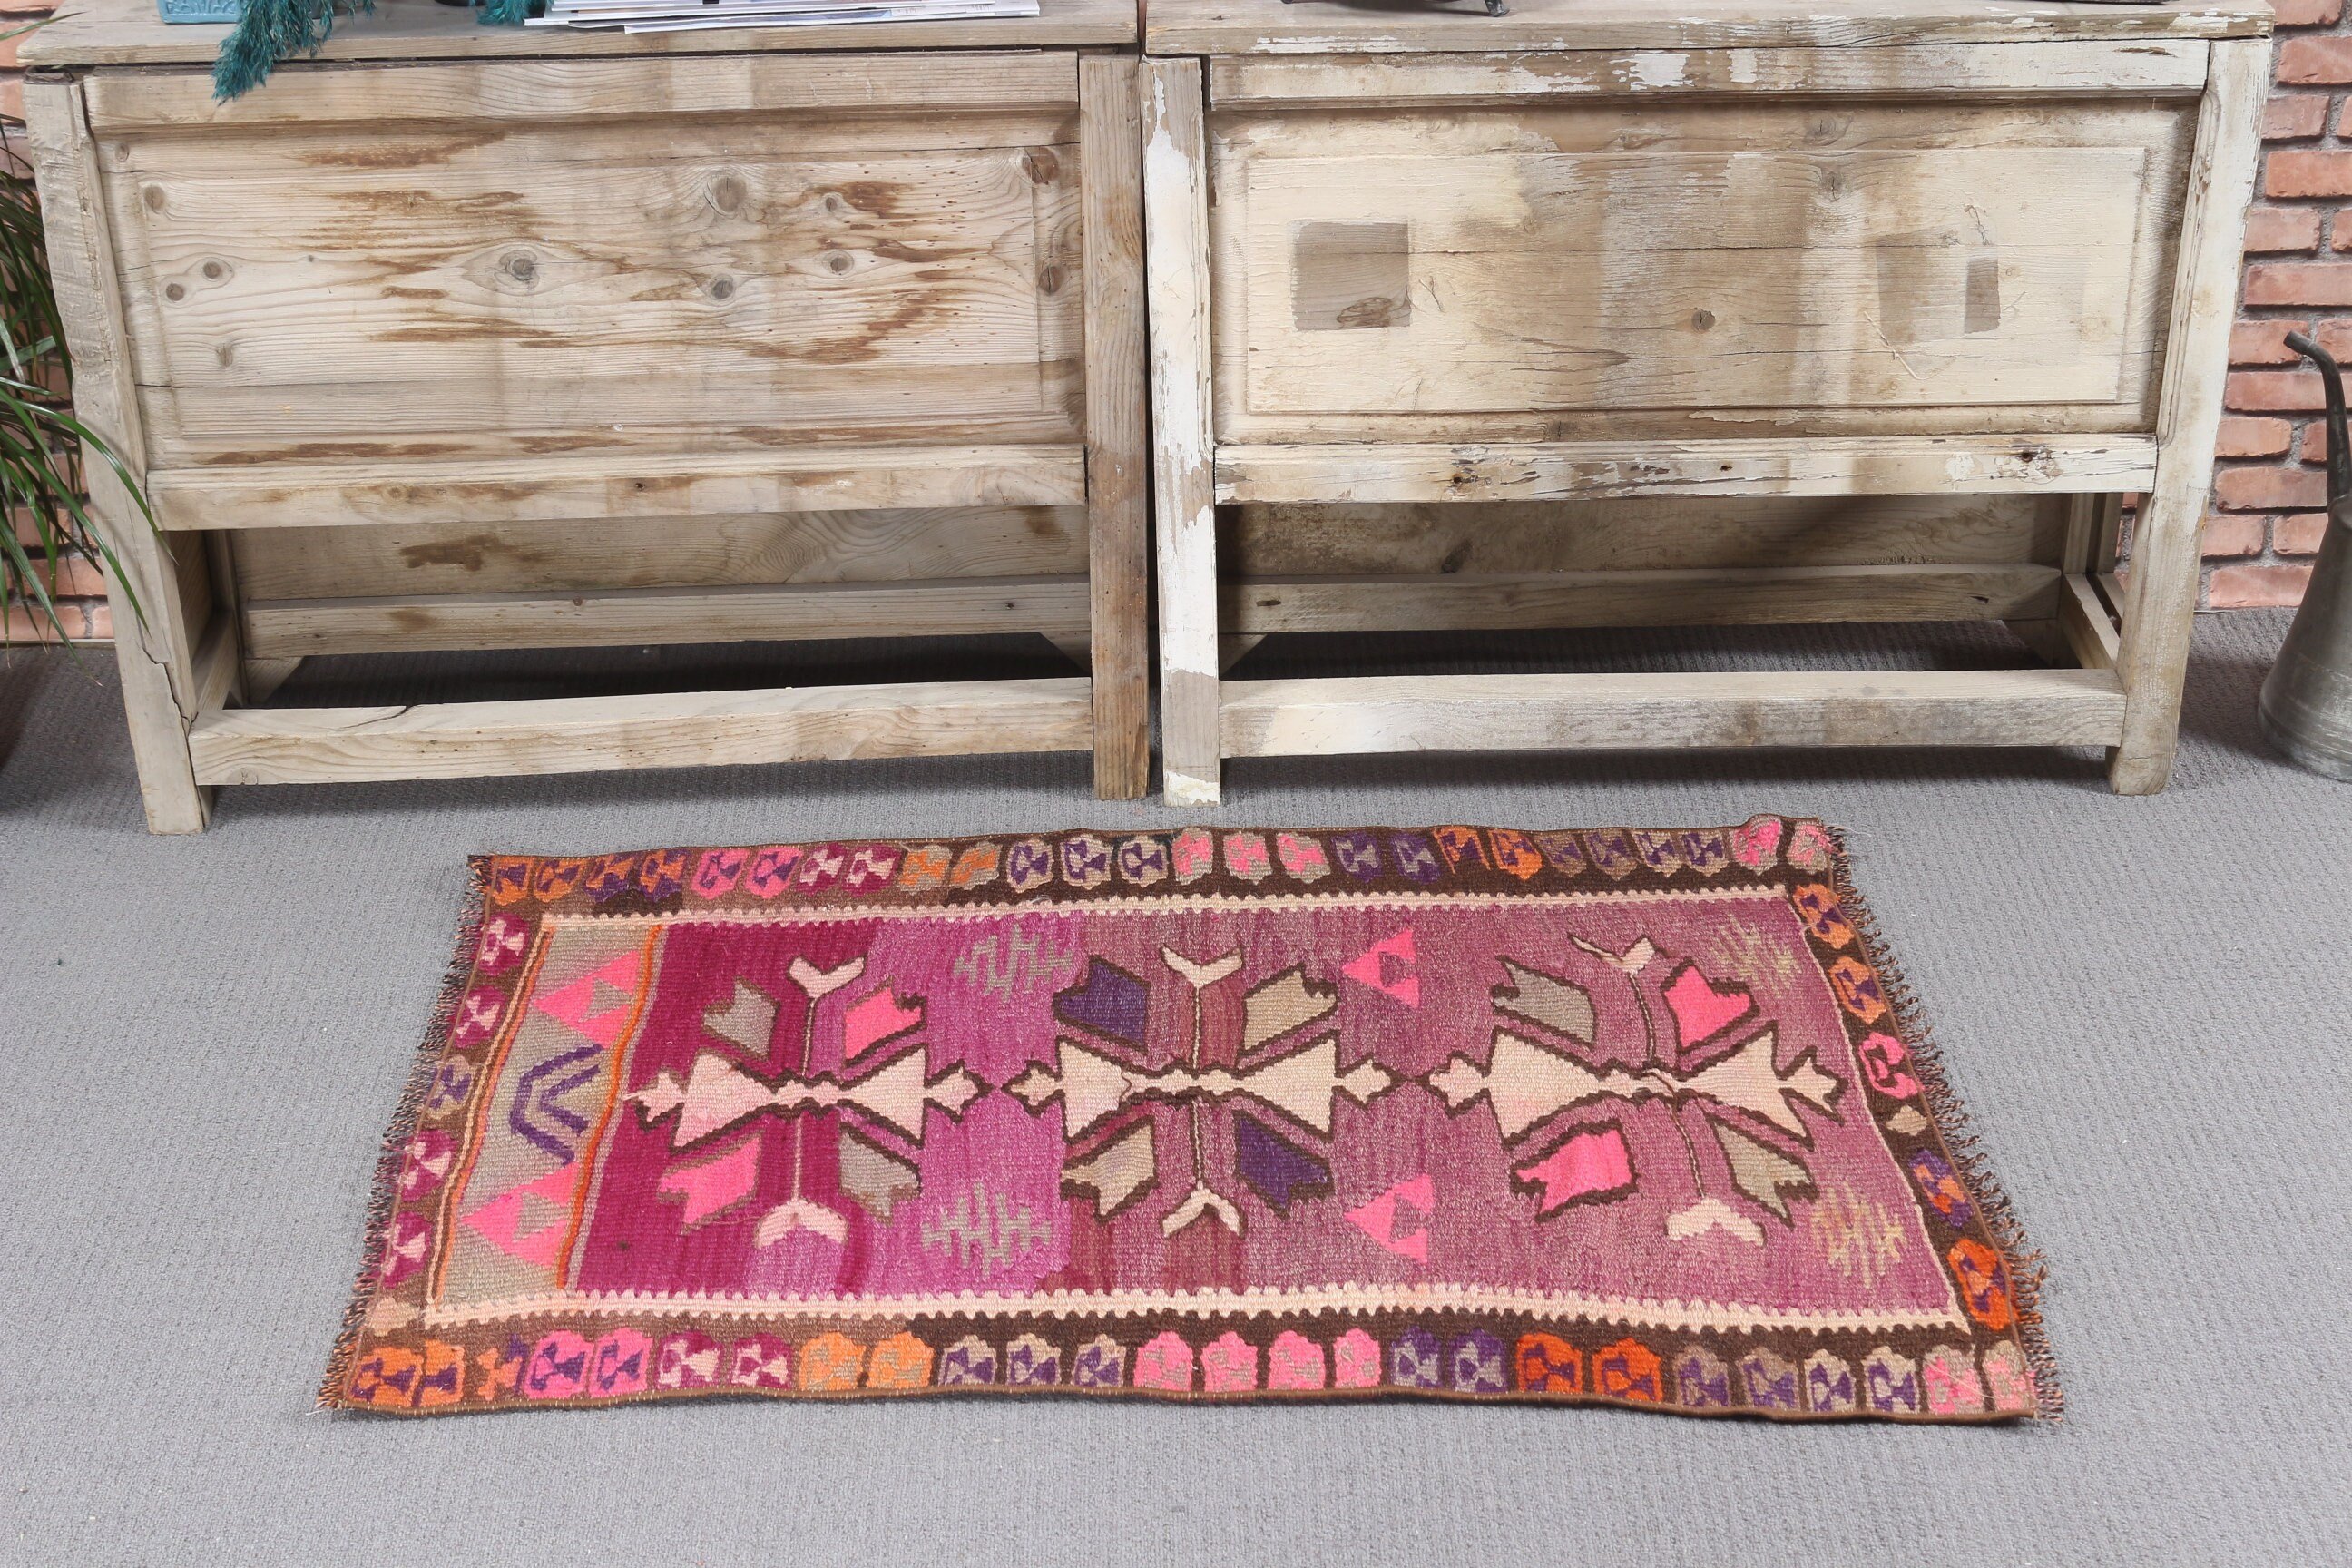 Turkish Rug, Moroccan Rugs, Entry Rug, Brown Home Decor Rug, Nursery Rug, Cute Rug, Vintage Rugs, 2.2x3.3 ft Small Rug, Oriental Rugs